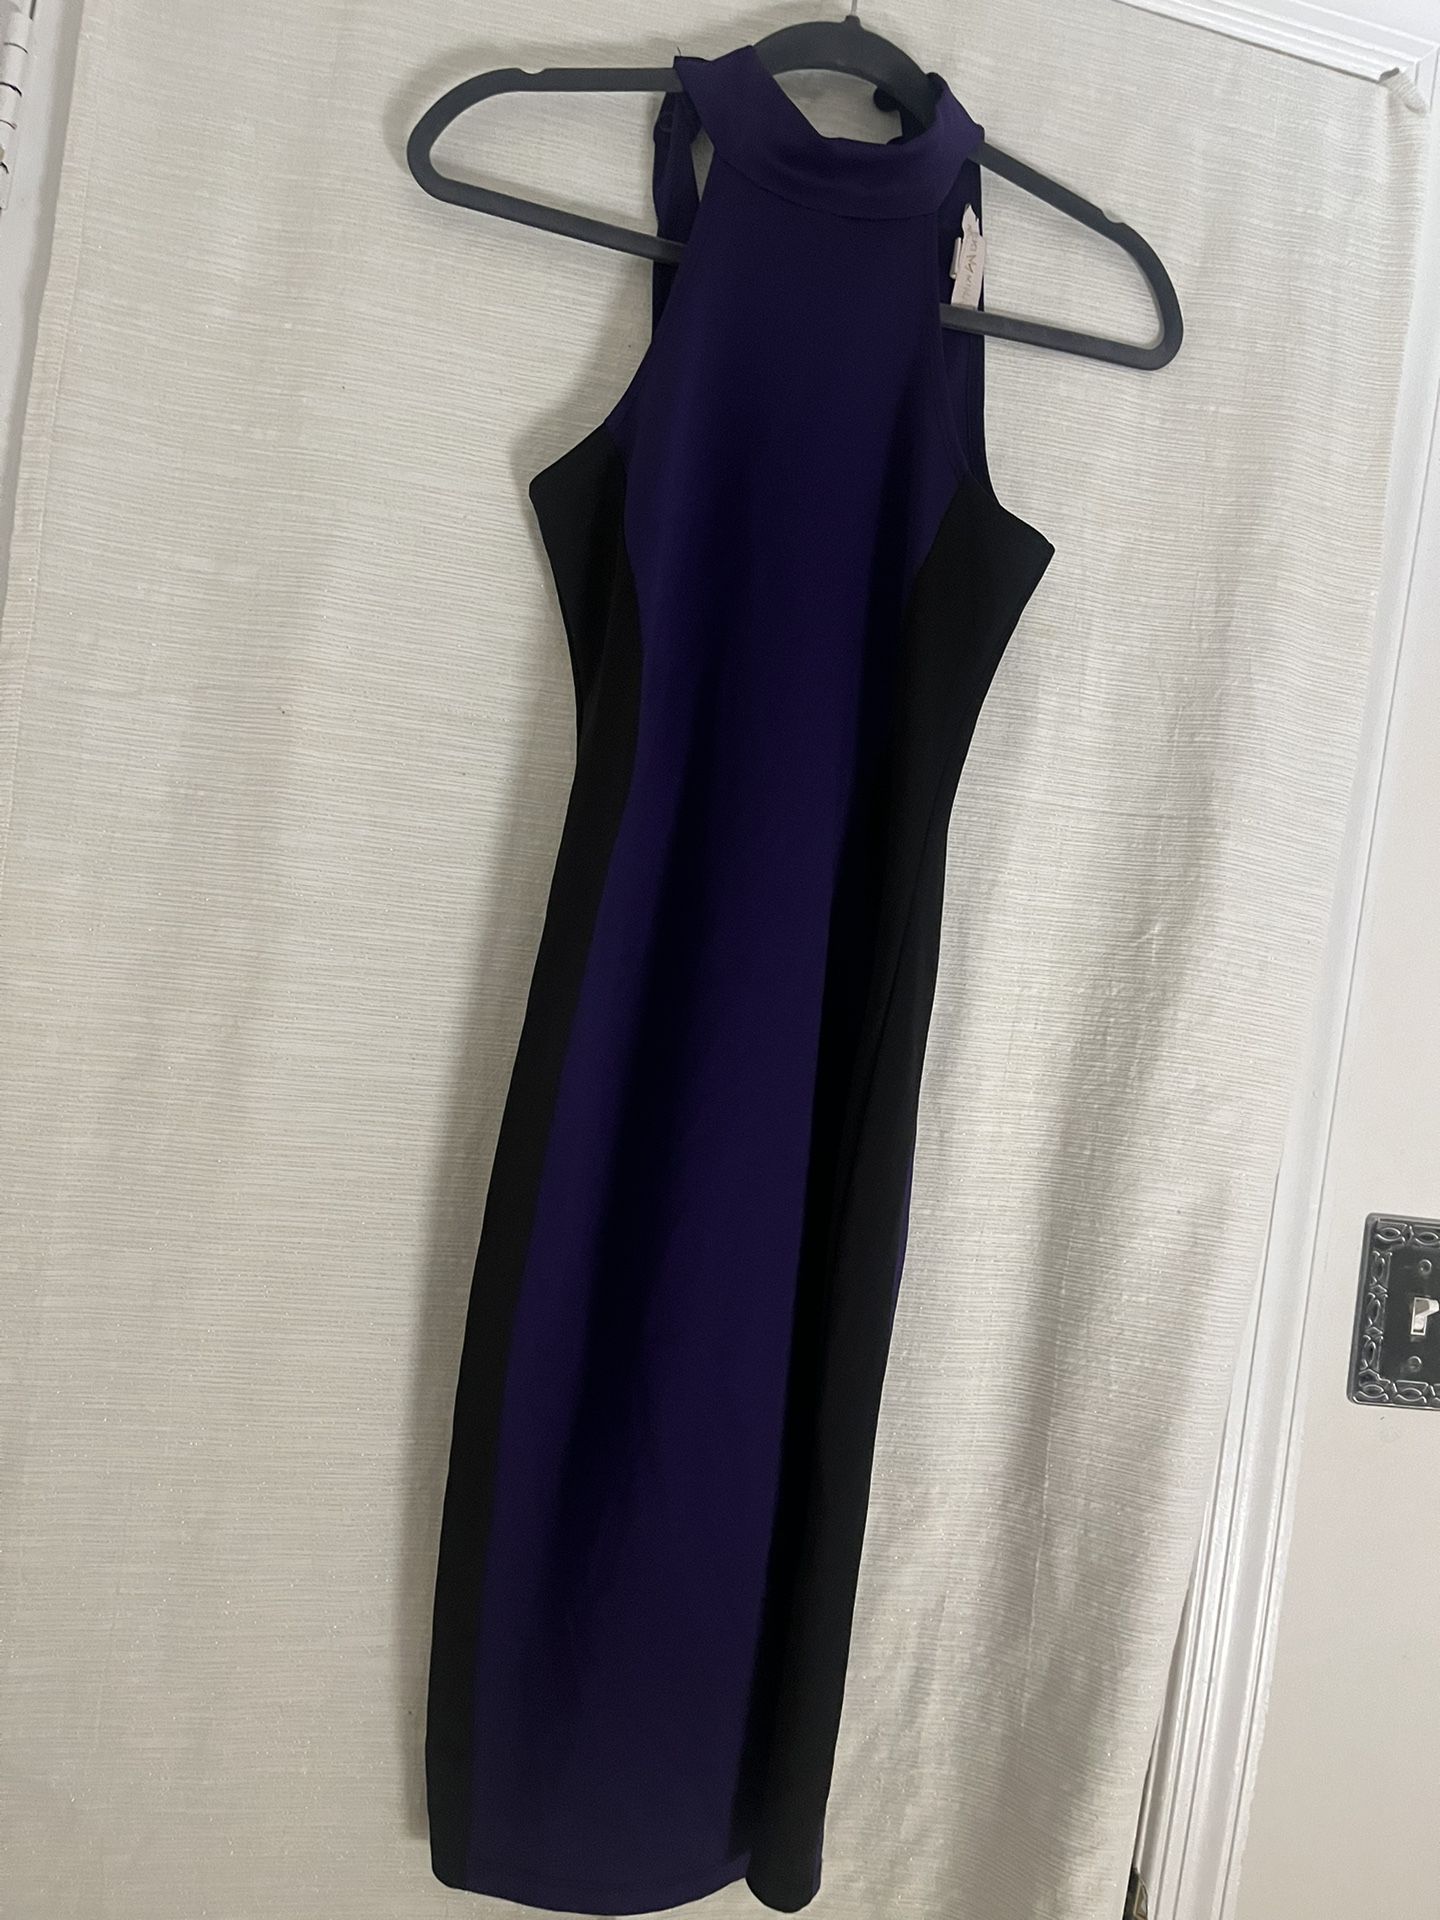 Form Fitting Purple & Black Dress